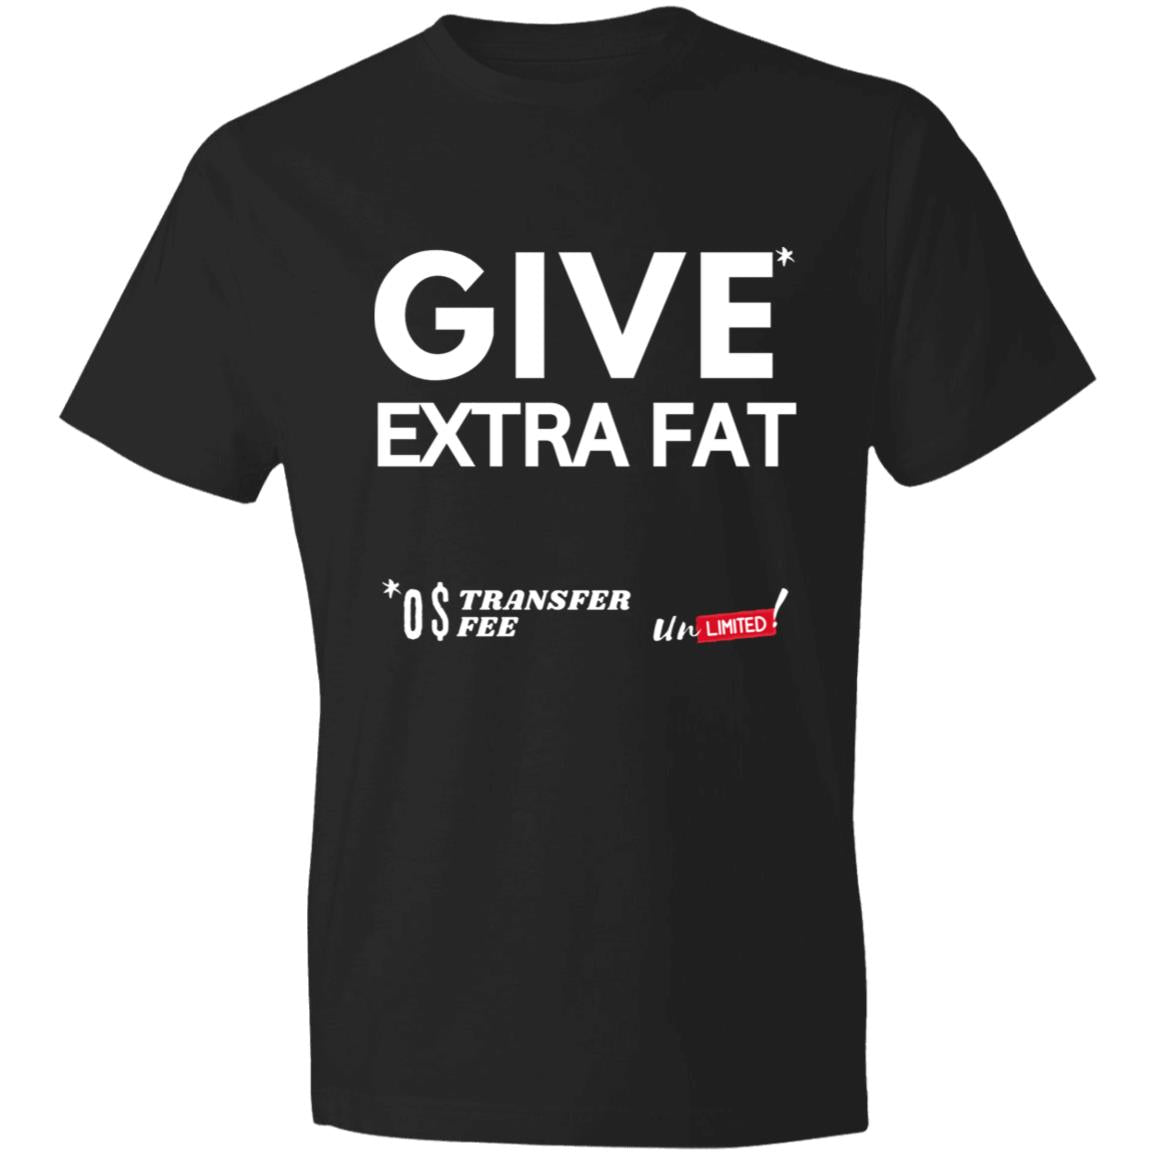 EXTRA FAT DEAL Lightweight T-Shirt 4.5 oz